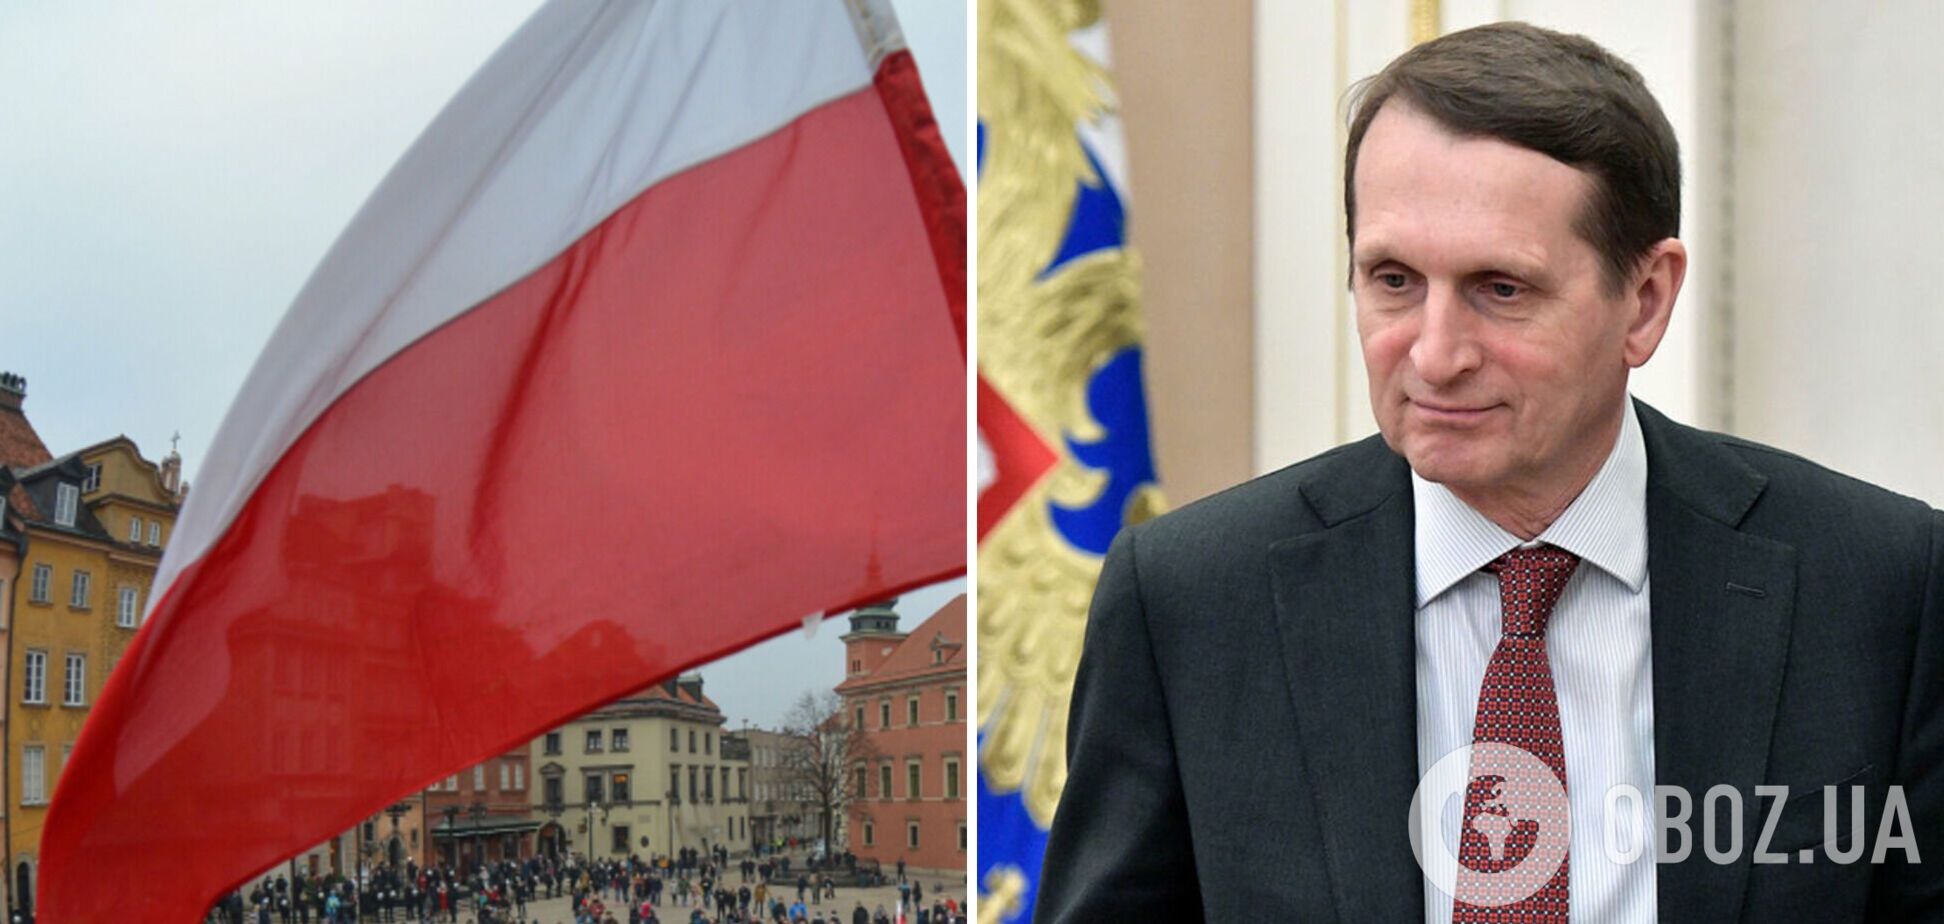 Нарышкин заявил, что Польша намерена установить контроль на западе Украины